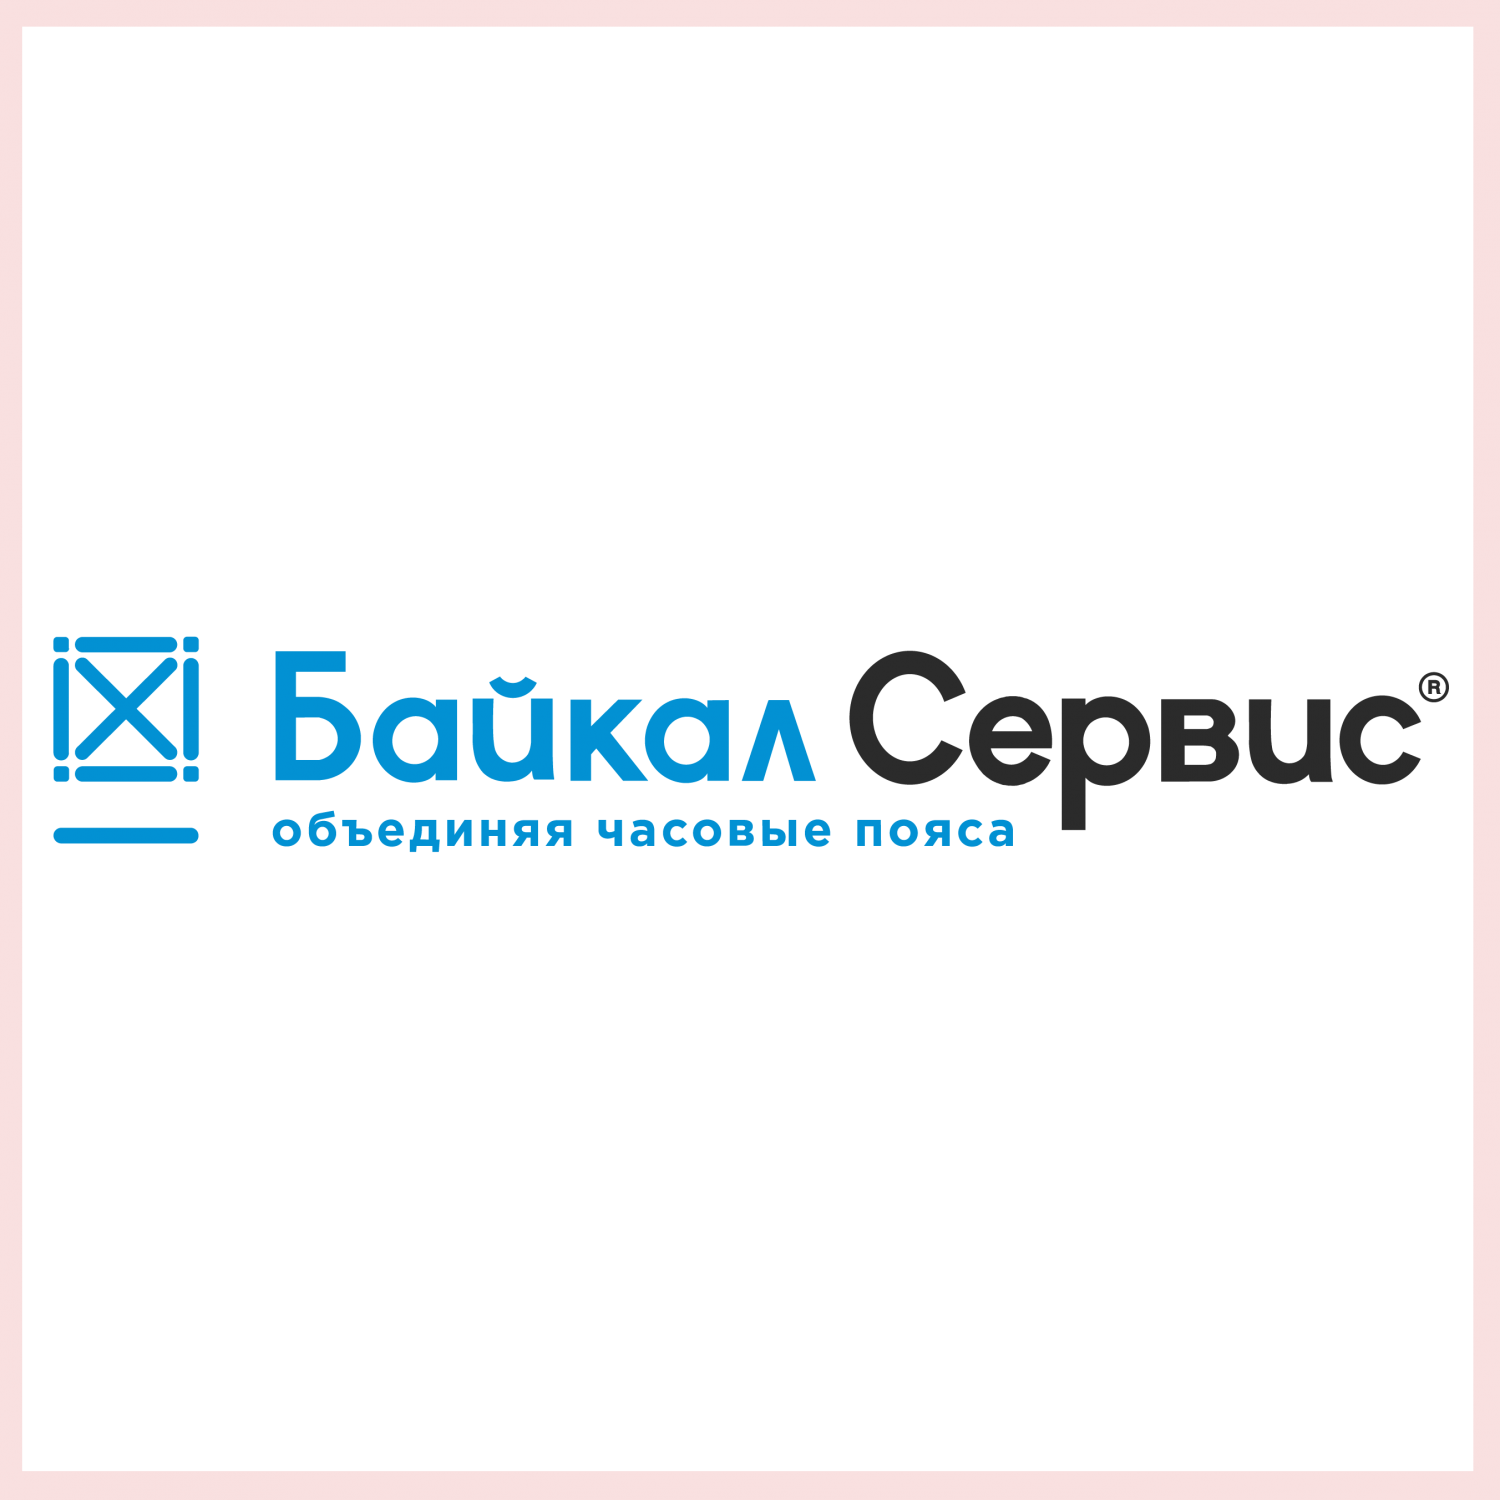 Байкал посылок сервис. Байкал сервис. Байкал сервис транспортная компания. Байкал сервис лого. Логотип компании Байкал сервис.